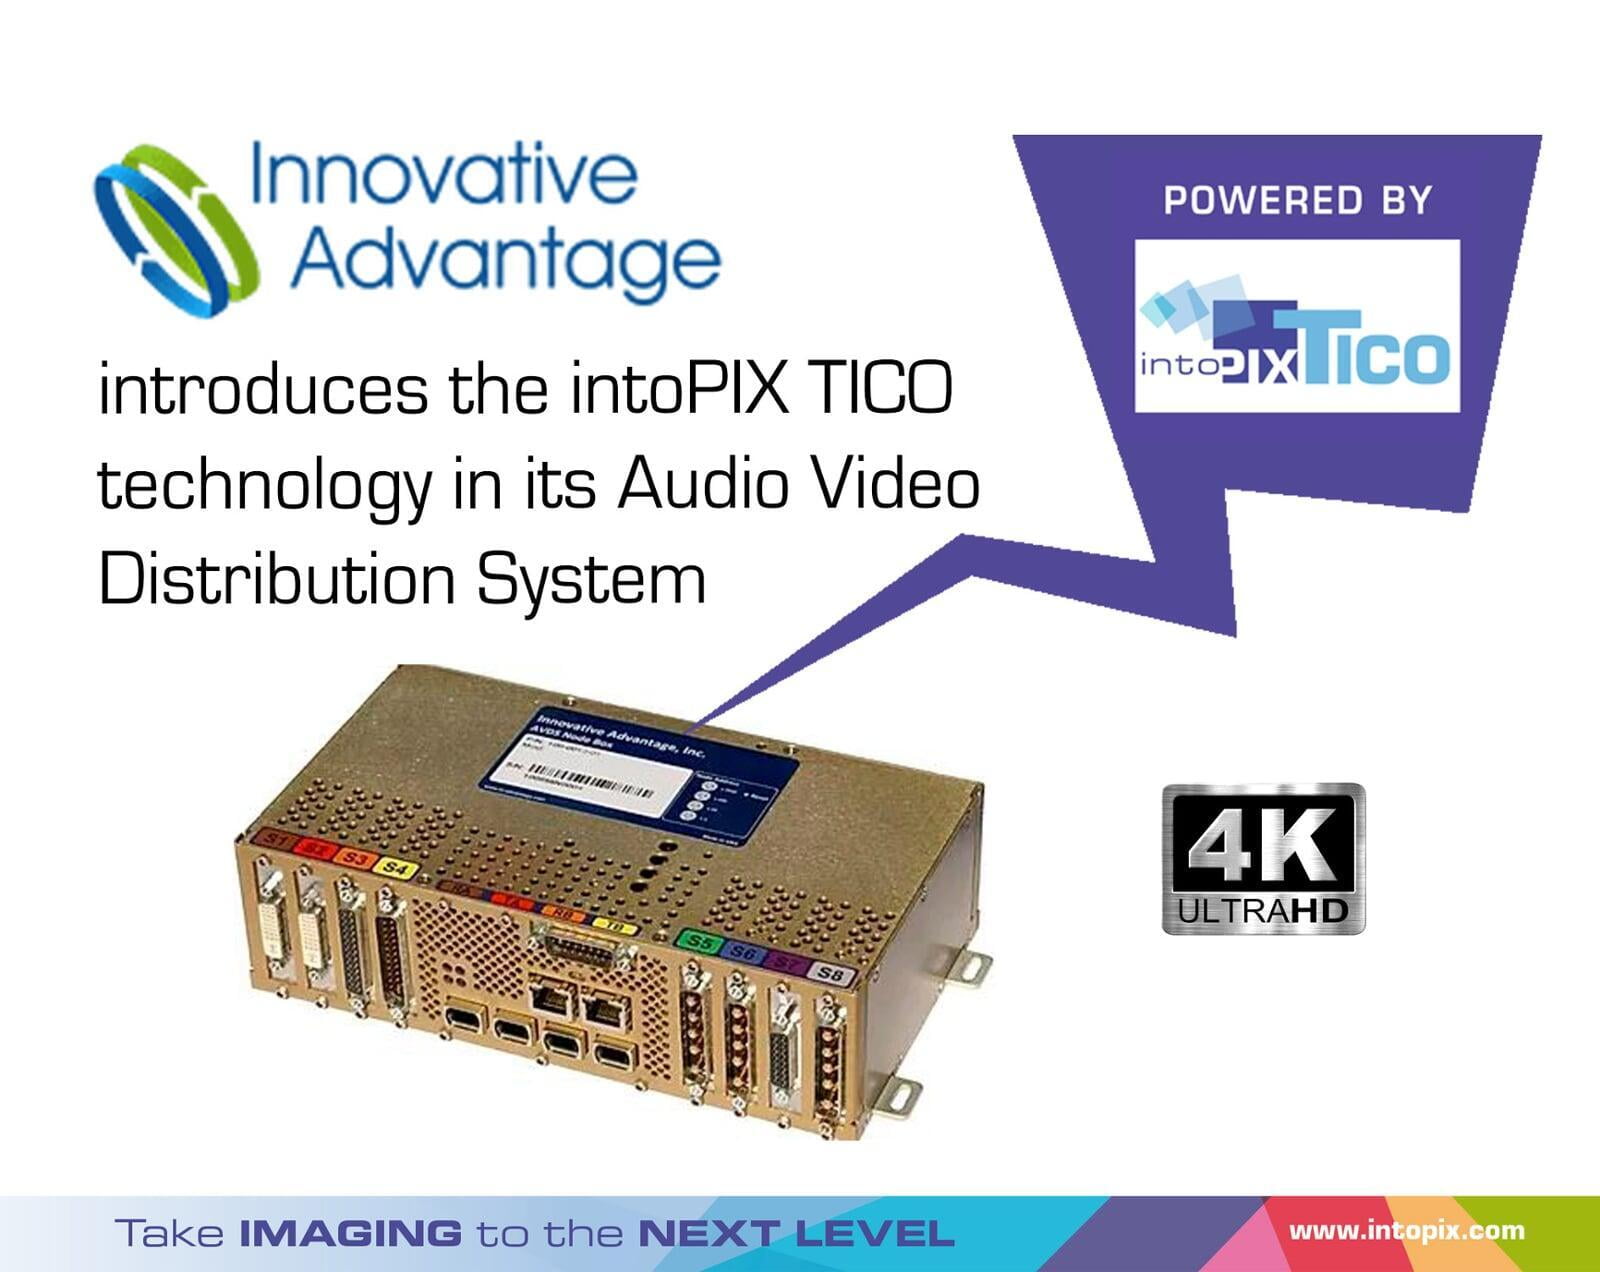 創新優勢將公務機中的流媒體從高清升級到 4K intoPIX TICO RDD35技術 